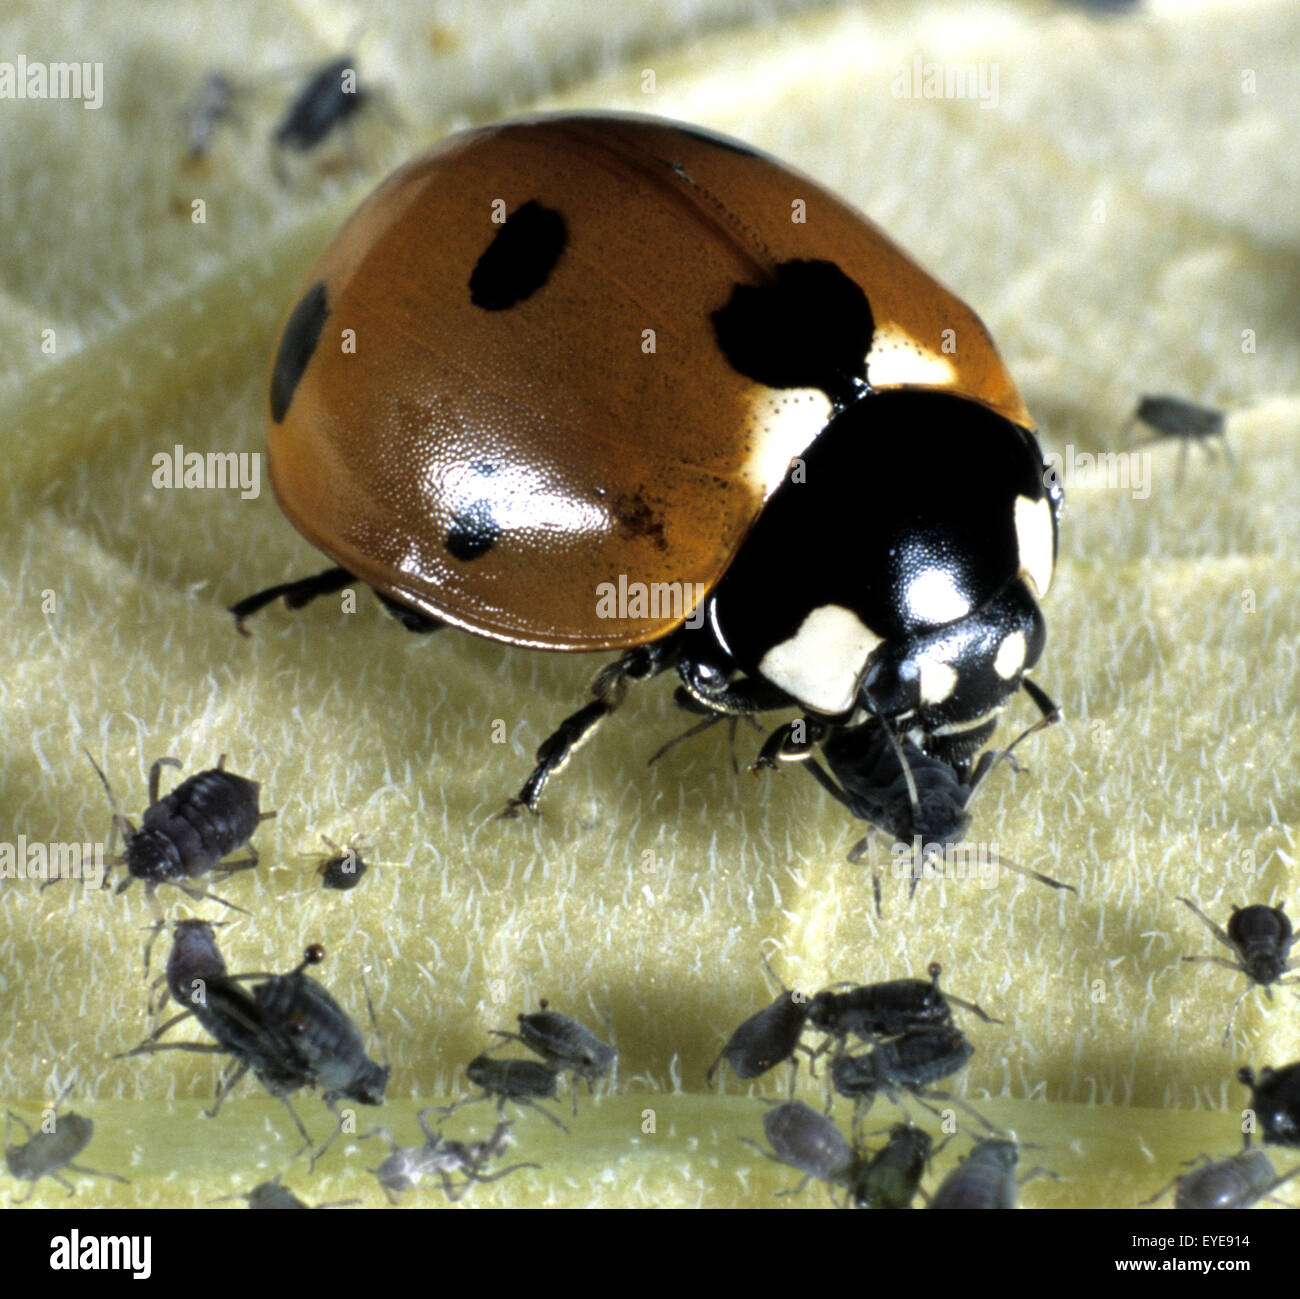 Marienkäfer, Coccinella septempunctata, Roter Käfer, beim Fressen von Blattläusen, Insekt Stock Photo